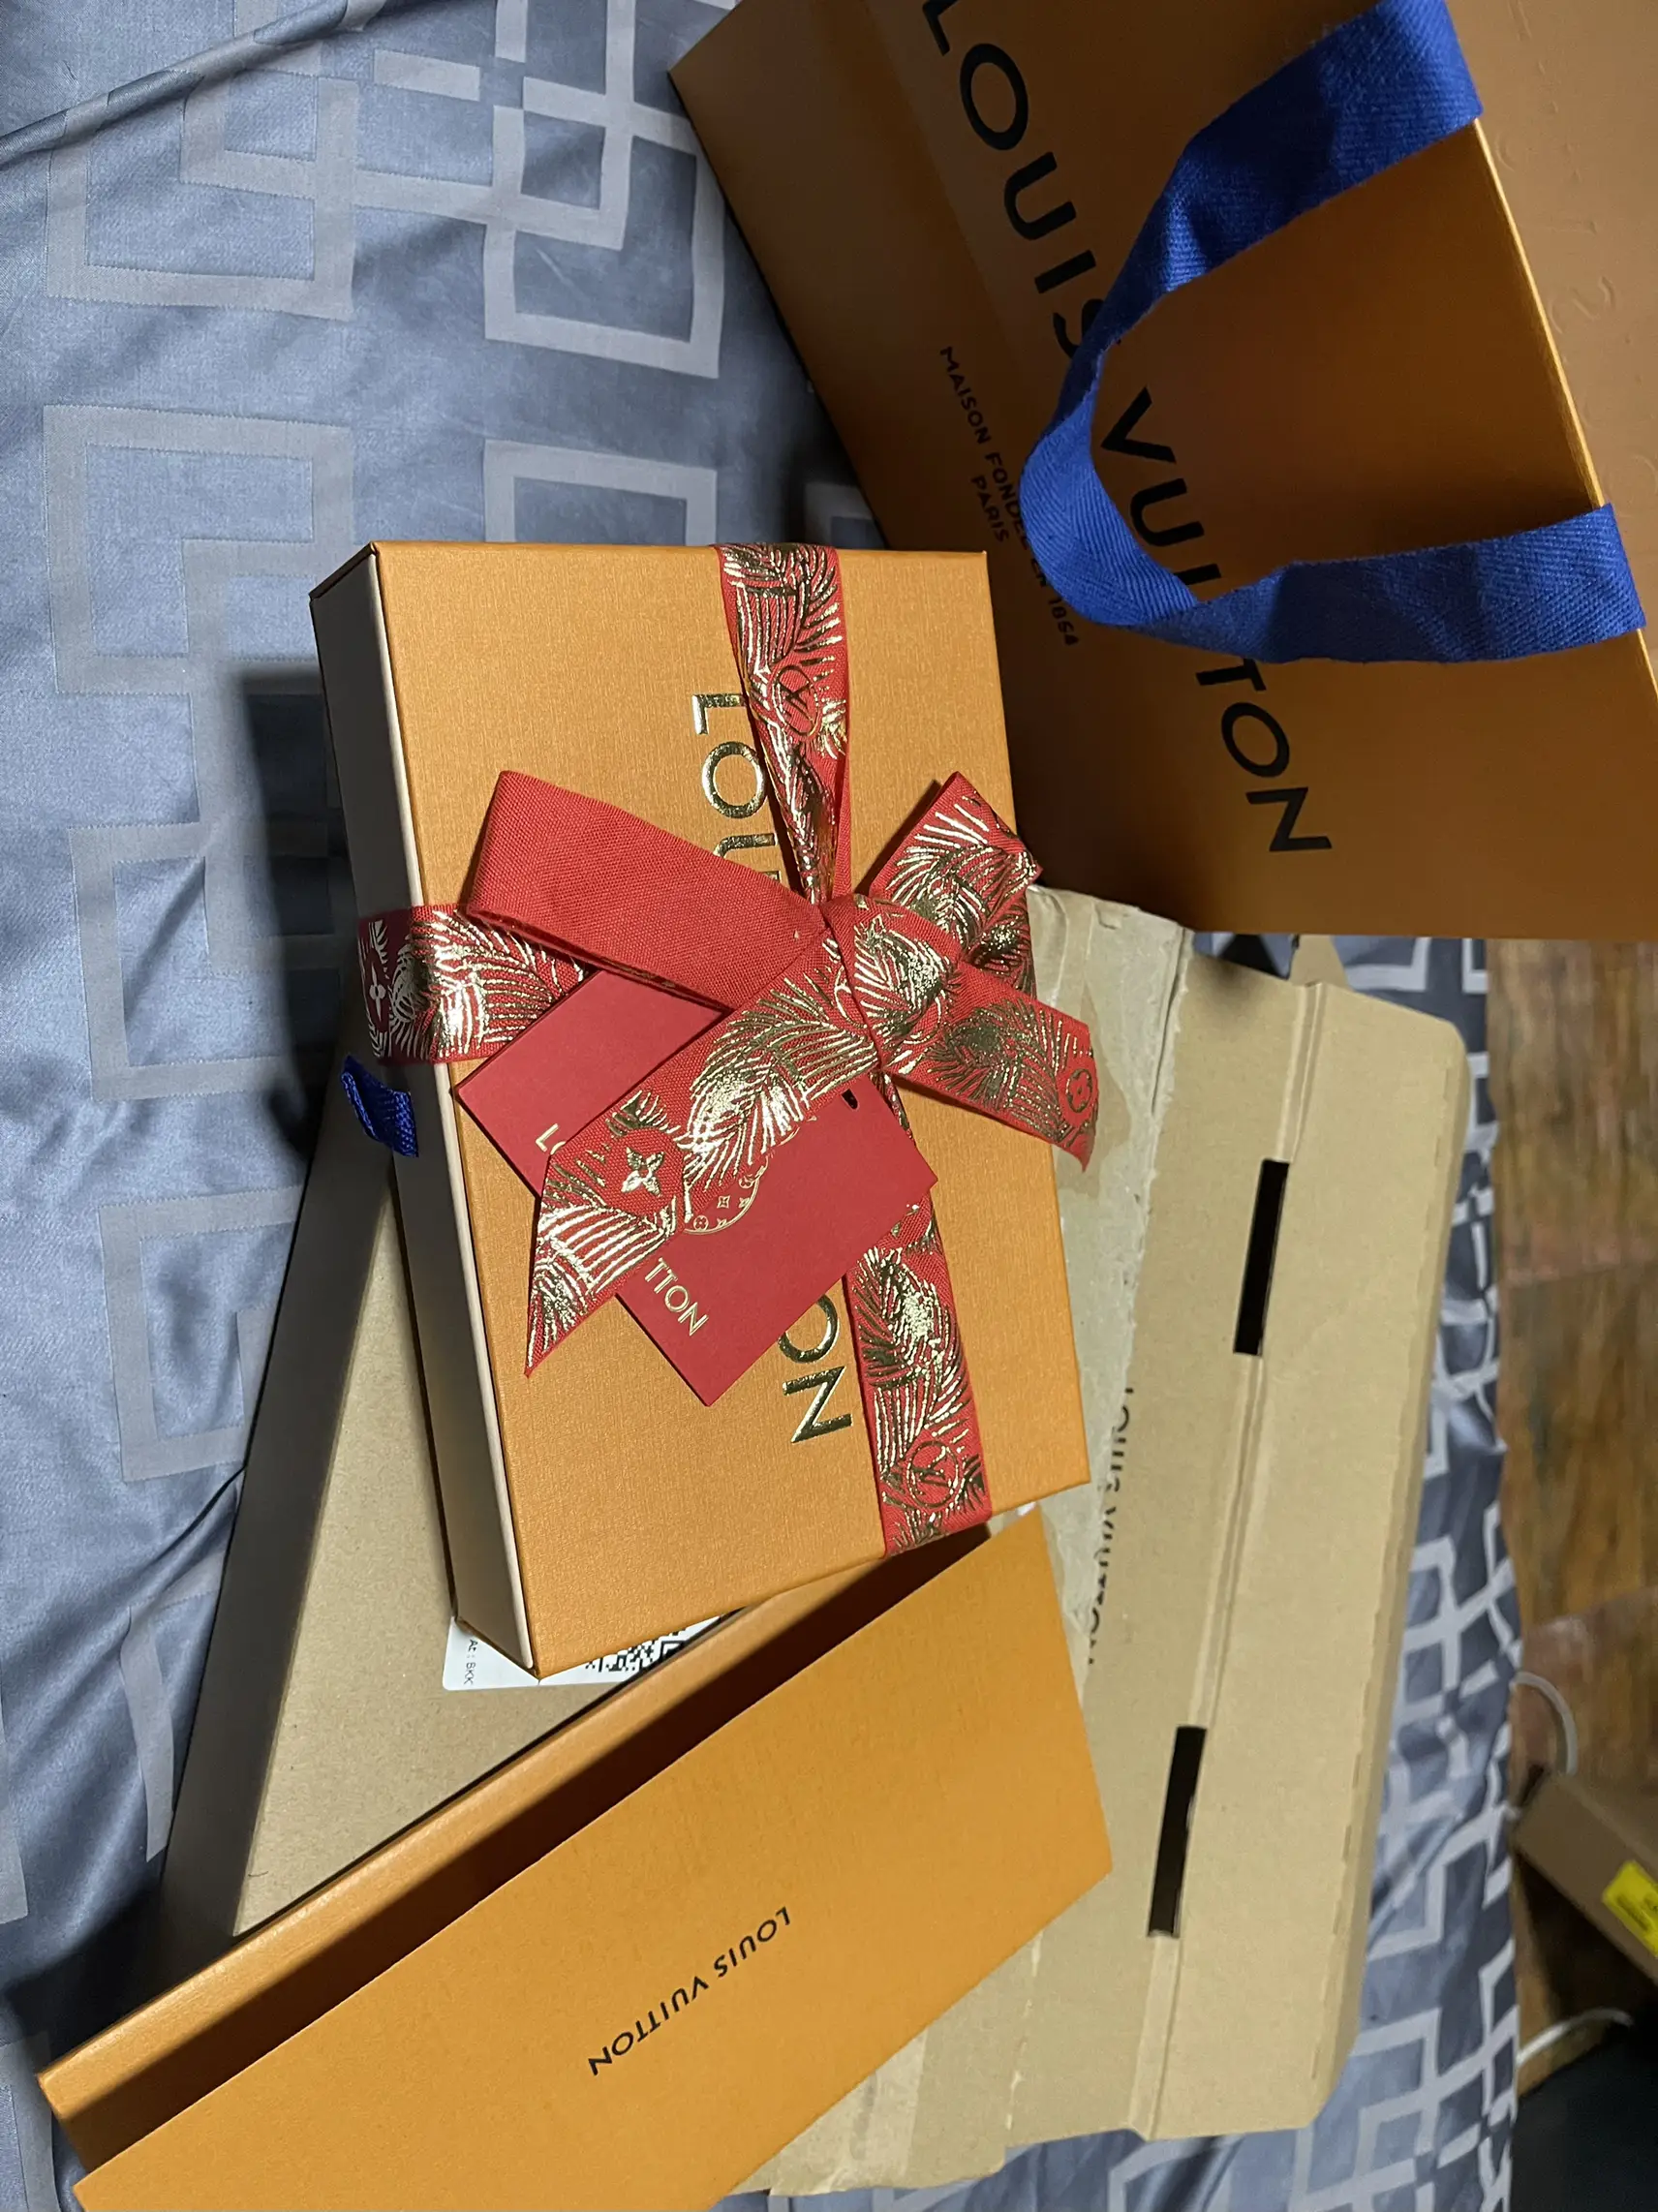 Louis Vuitton Gift Box and LV Ribbon  Louis vuitton gifts, Louis vuitton,  Gift box